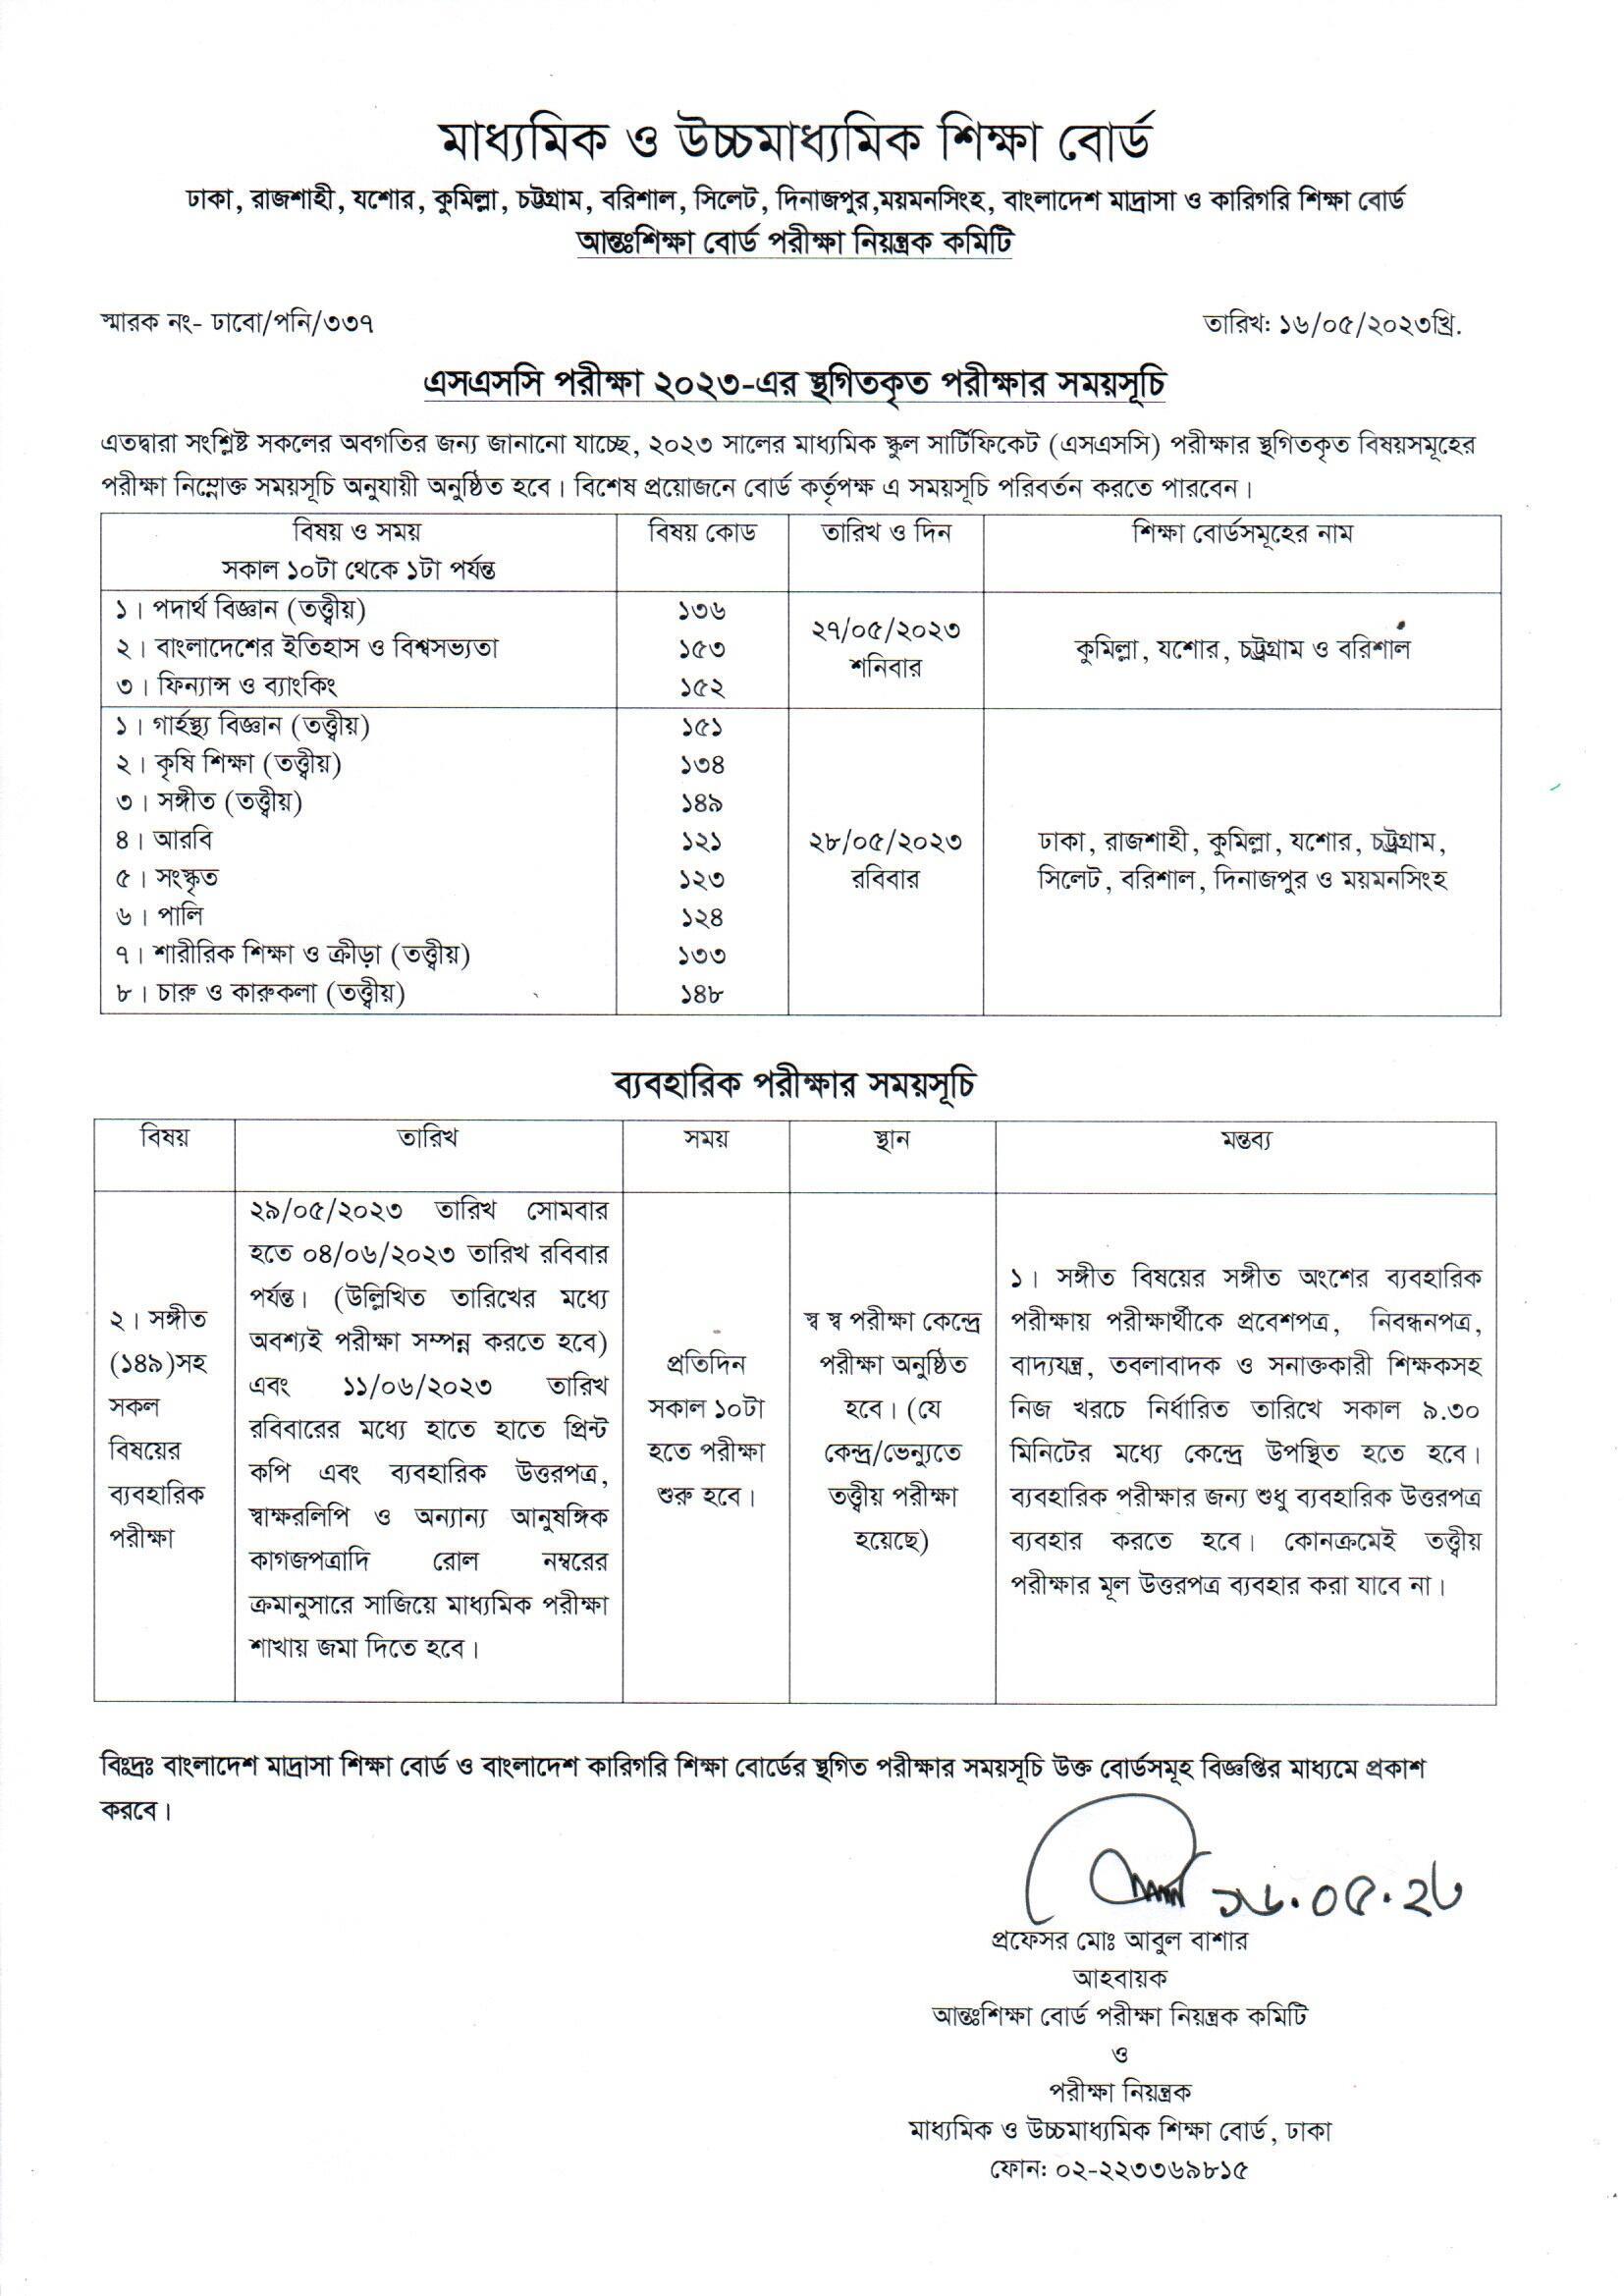 SSC 2023 Exam Re-schedule date in Bangladesh । এসএসসি স্থগিতকৃত পরীক্ষার সময়সূচী দেখুন